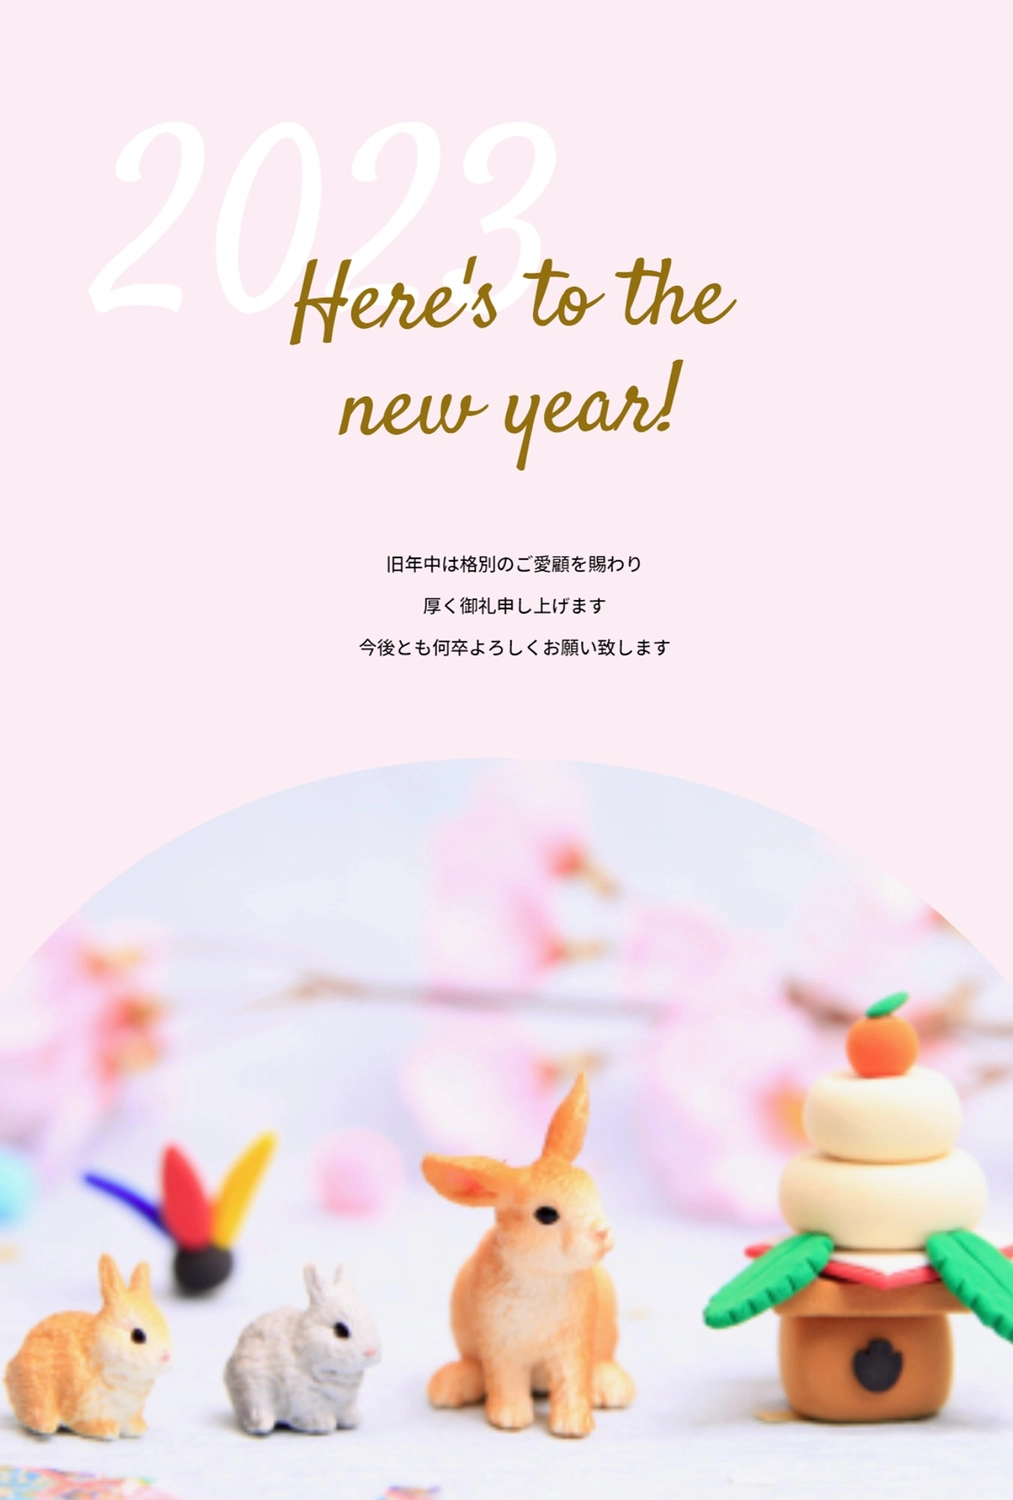 シュライヒ　鏡餅と並んだうさぎ　ピンク背景でHAPPY NEW YEAR, 卯, 干支, シュライヒフィギュア, 年賀状テンプレート